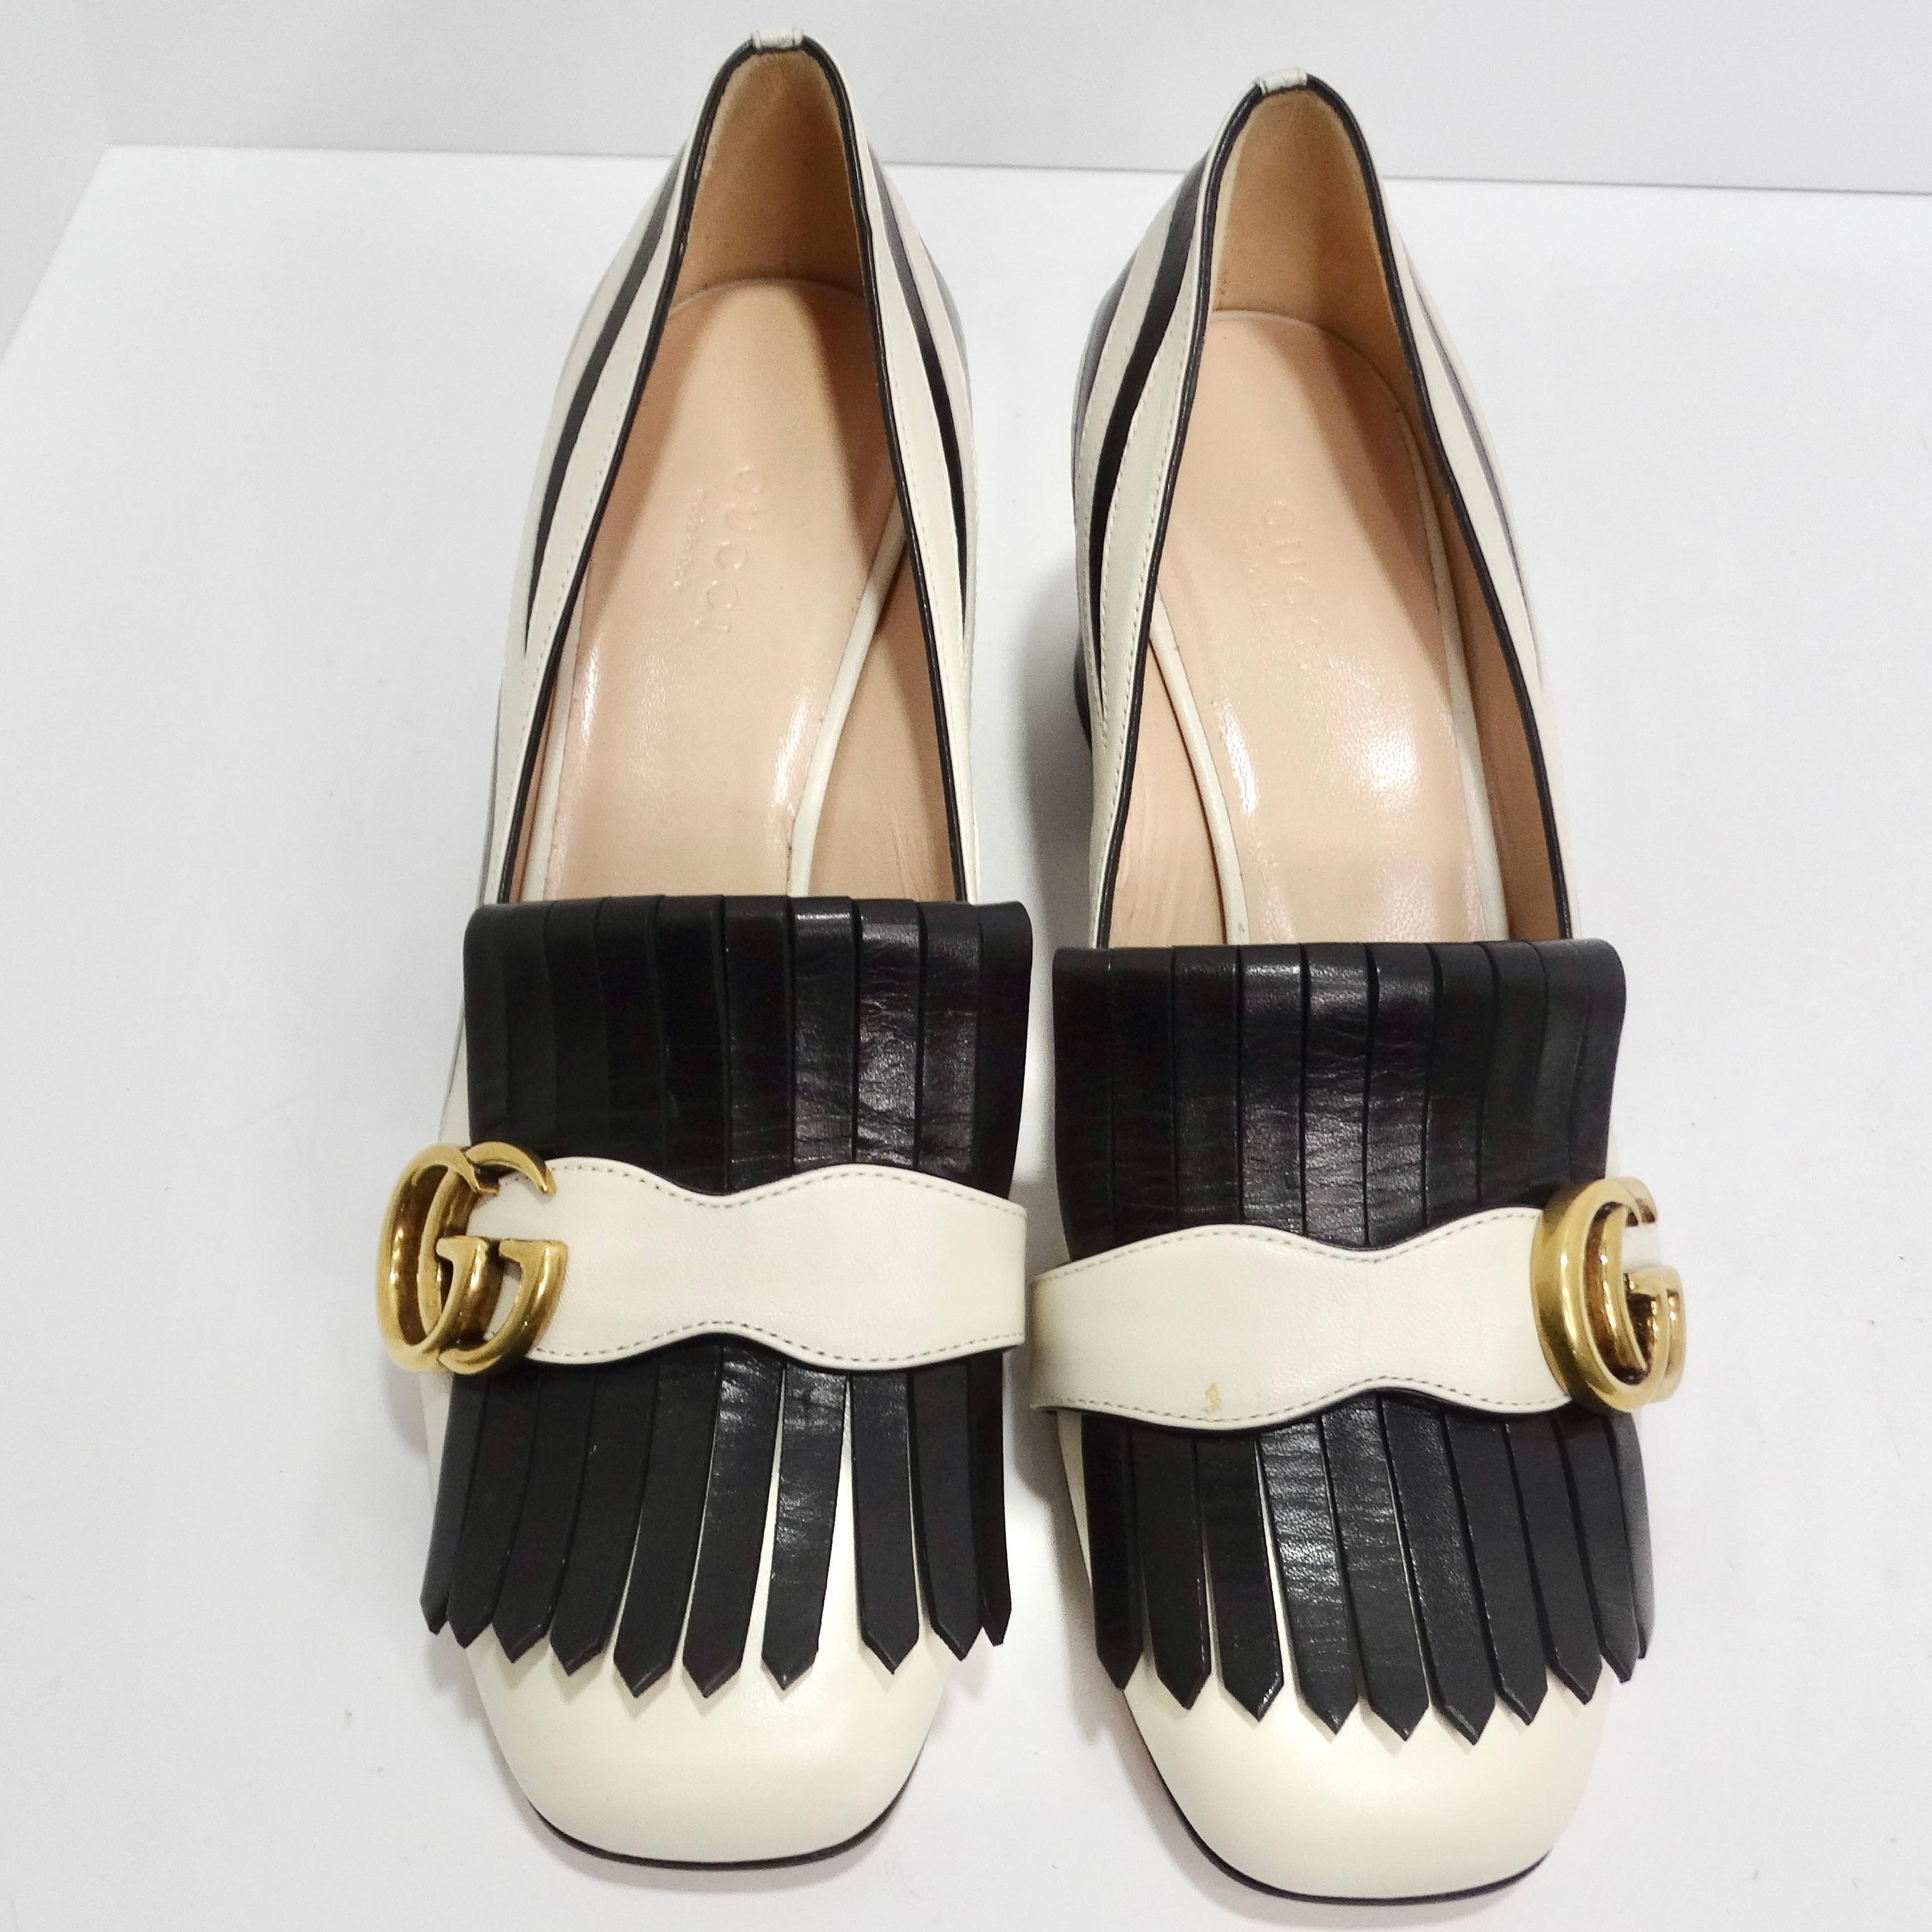 Élevez votre collection de chaussures avec le mocassin Gucci Marmont Fringe en cuir 55 mm, une fusion captivante du style Gucci classique, du design inspiré des animaux et du luxe emblématique. Ces mocassins sont une véritable incarnation de